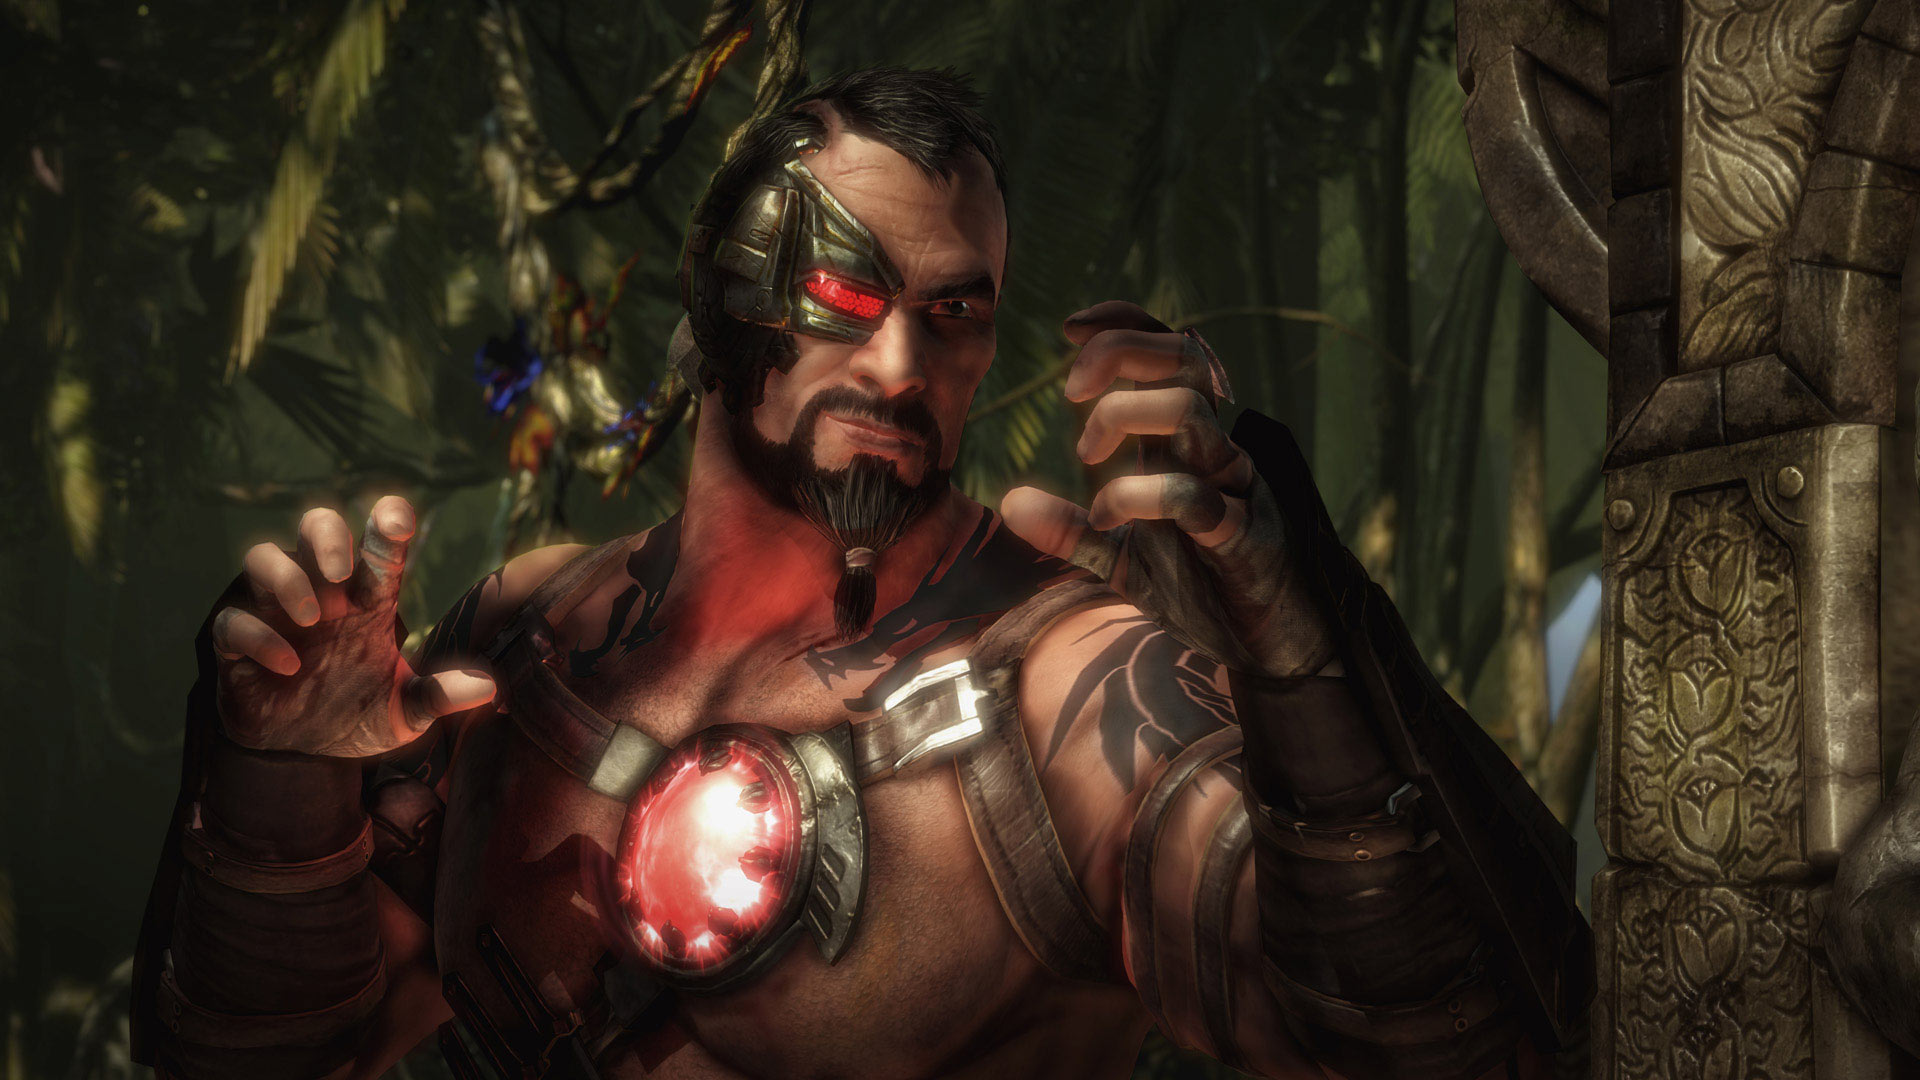 Mortal Kombat X: Requisitos mínimos y recomendados en PC - Vandal